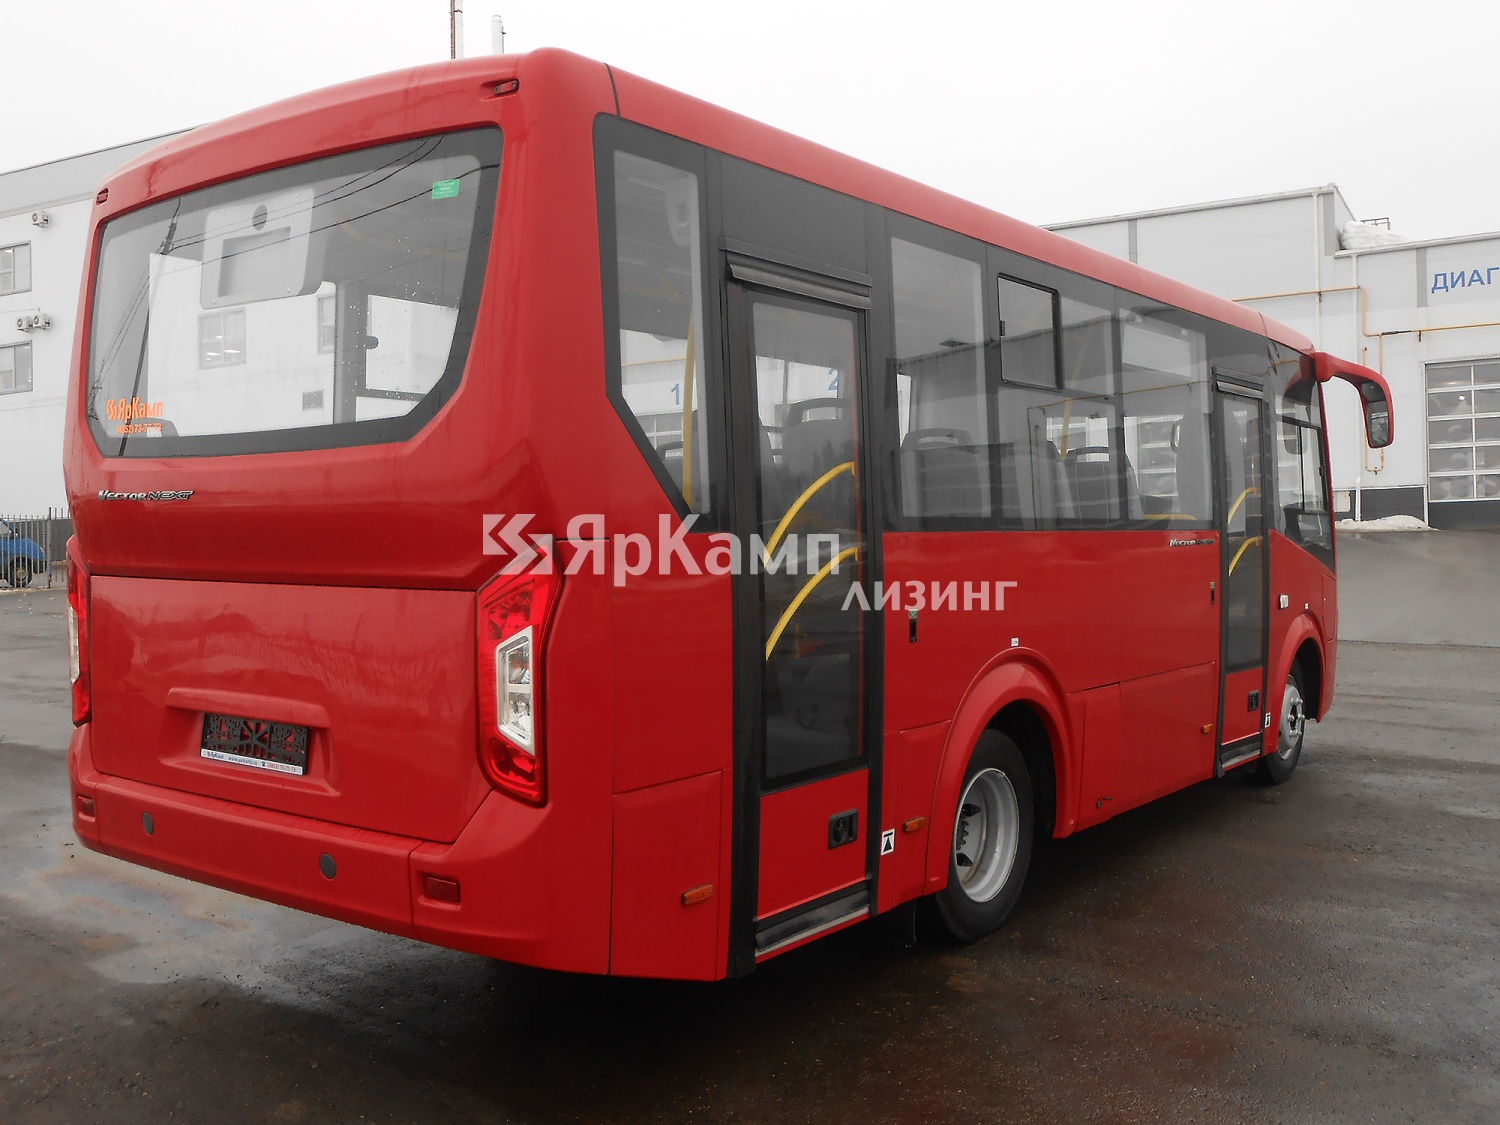 Профинансирован и передан в лизинг первый в Ярославле автобус ПАЗ "Вектор Next" красного цвета